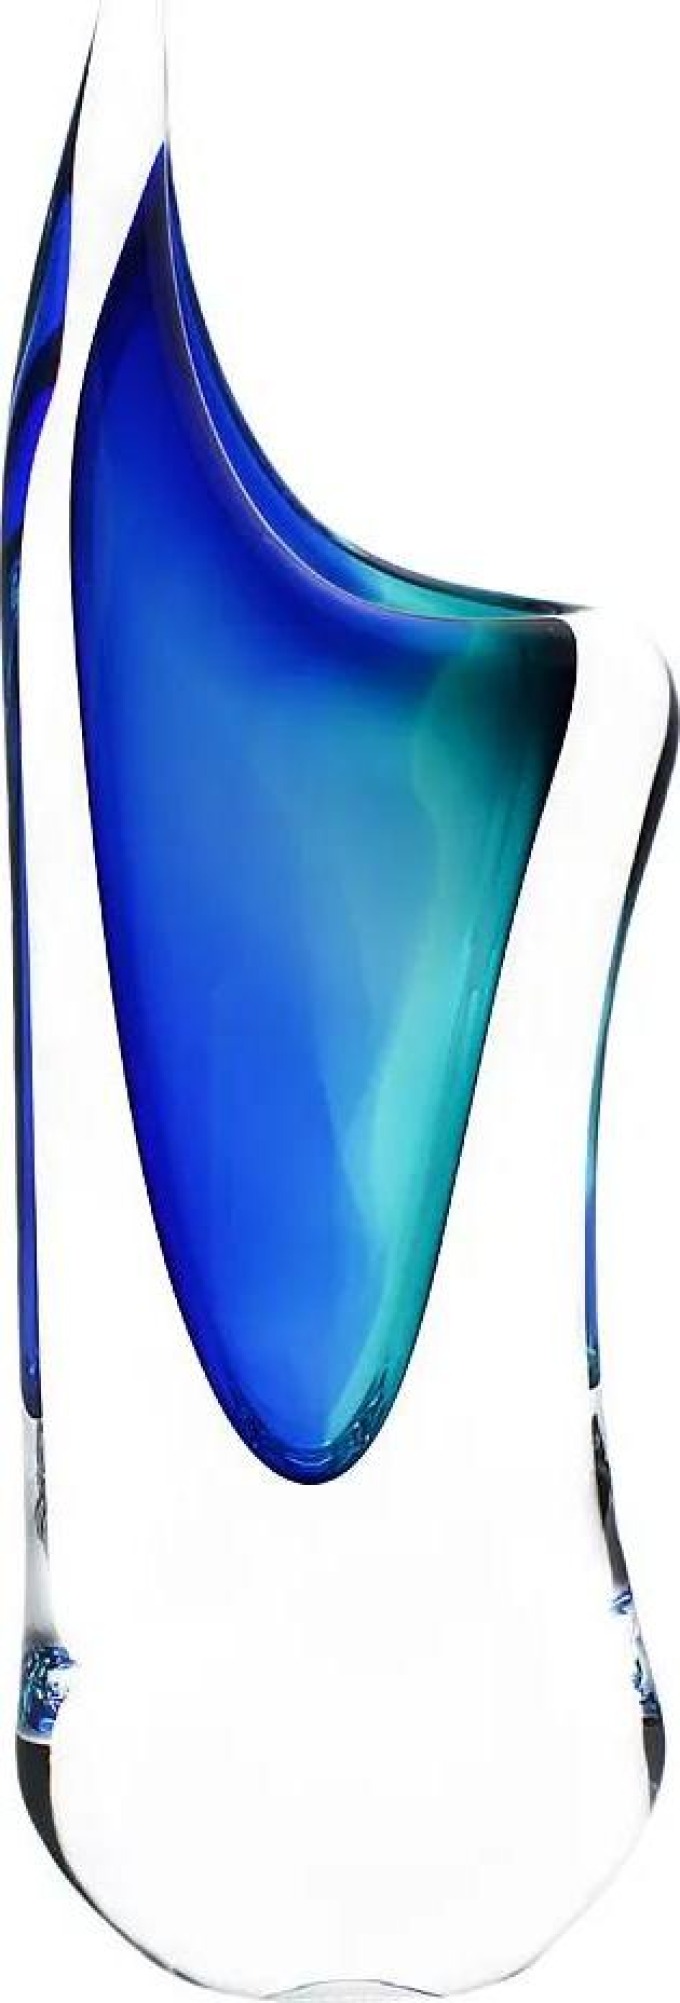 Skleněná váza hutní 04, modrá a tyrkysová, 34 cm | České hutní sklo od Artcristal Bohemia